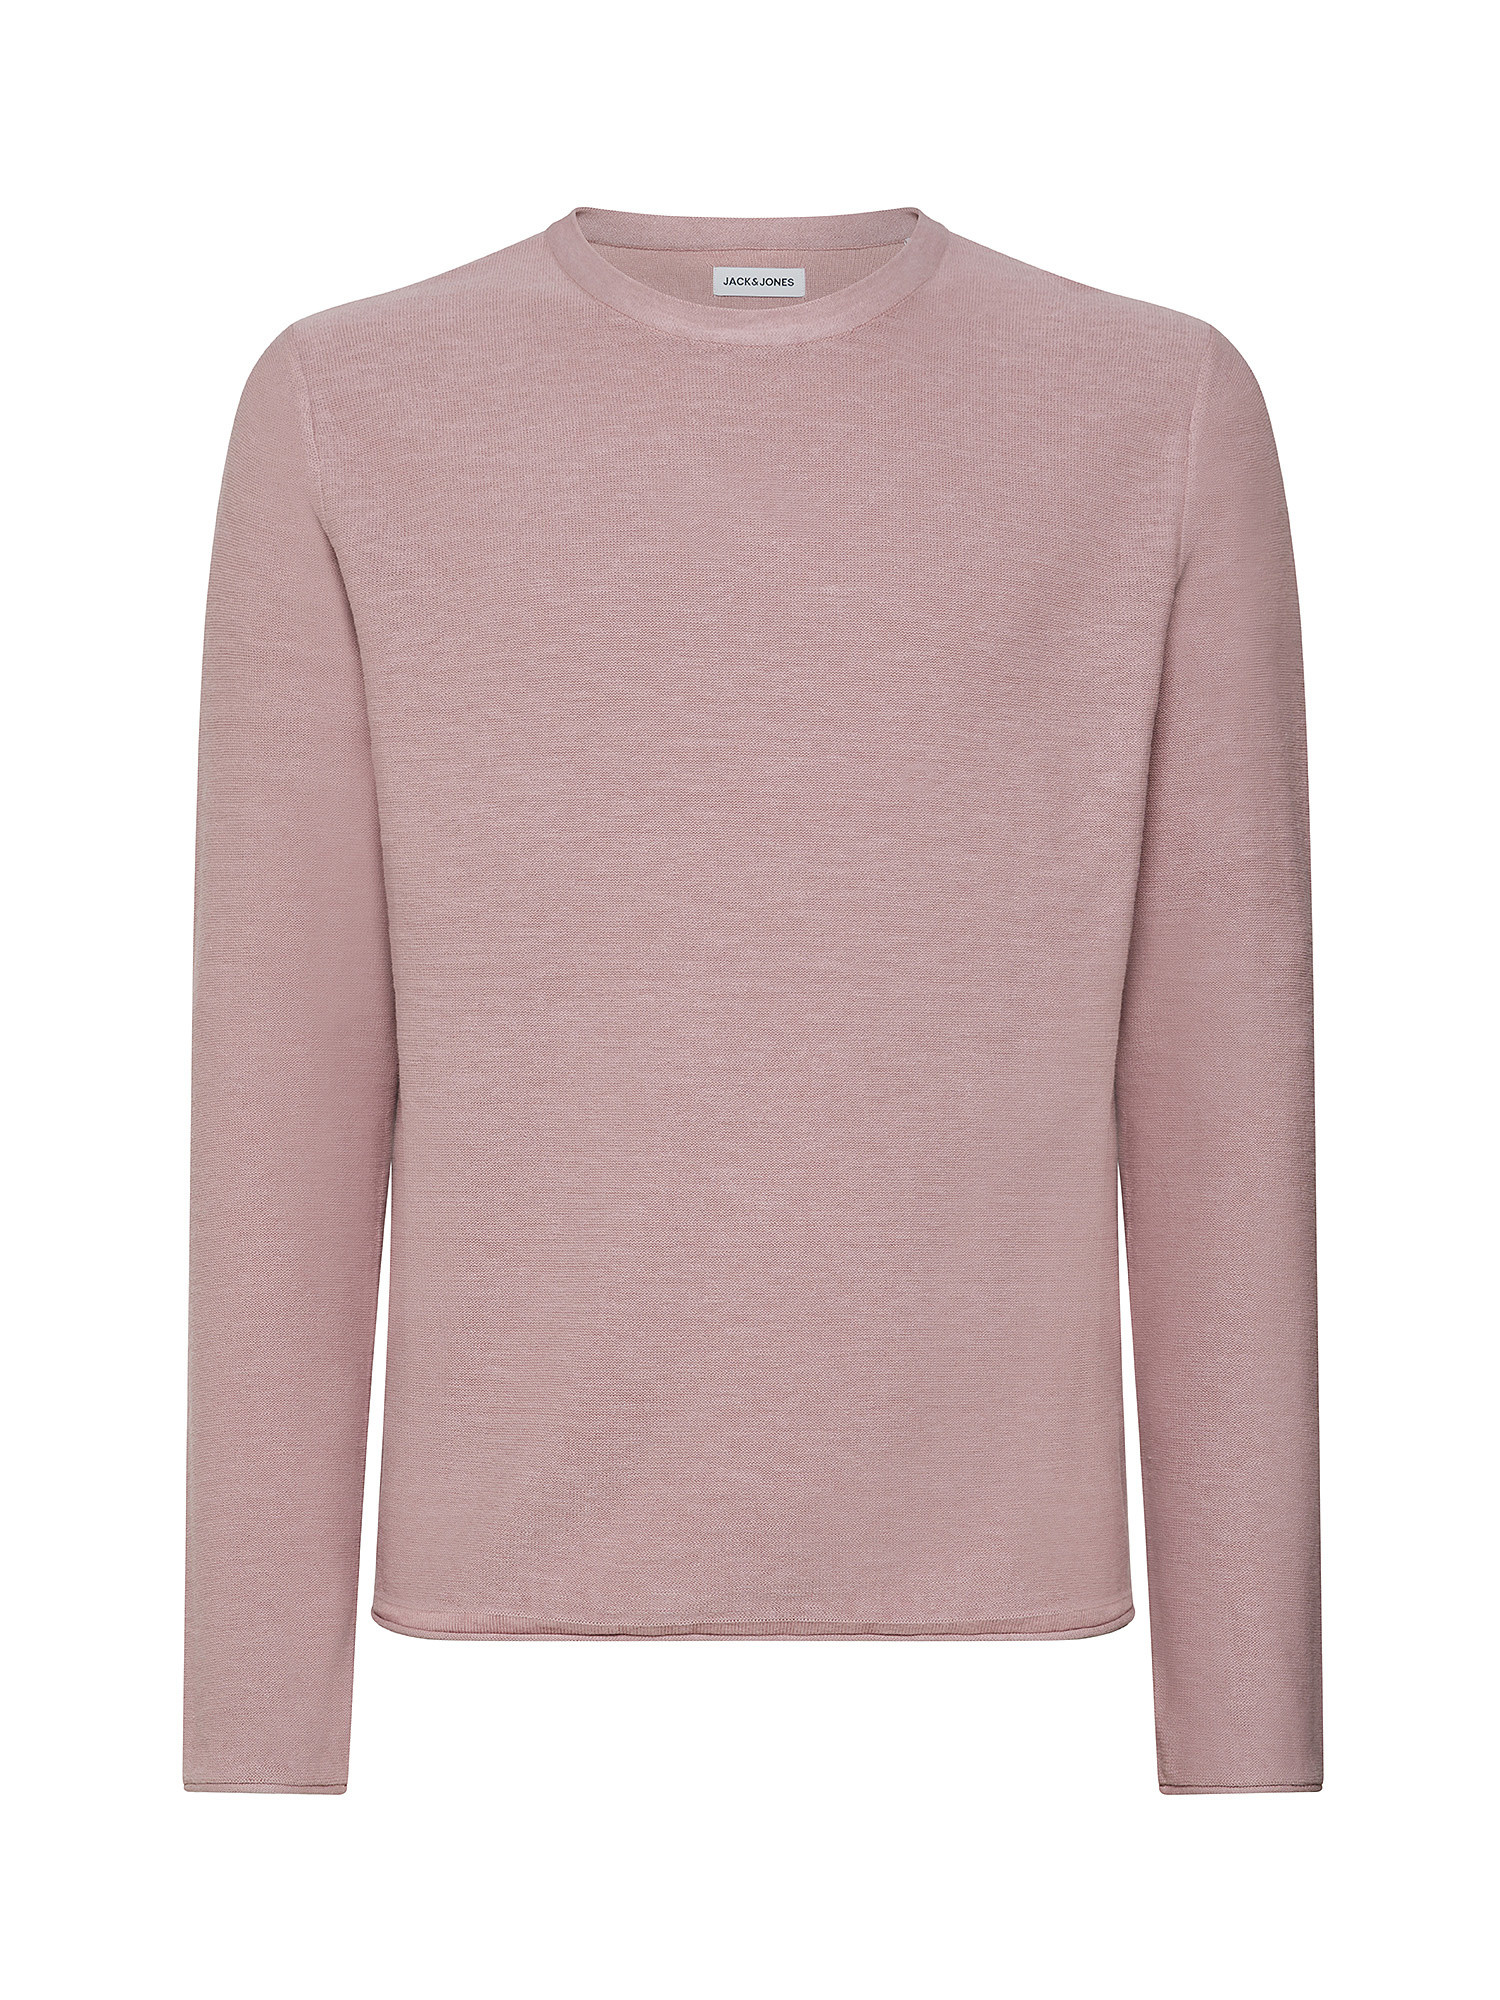 Jack & Jones - Linen blend pullover, Antique Pink, large image number 7